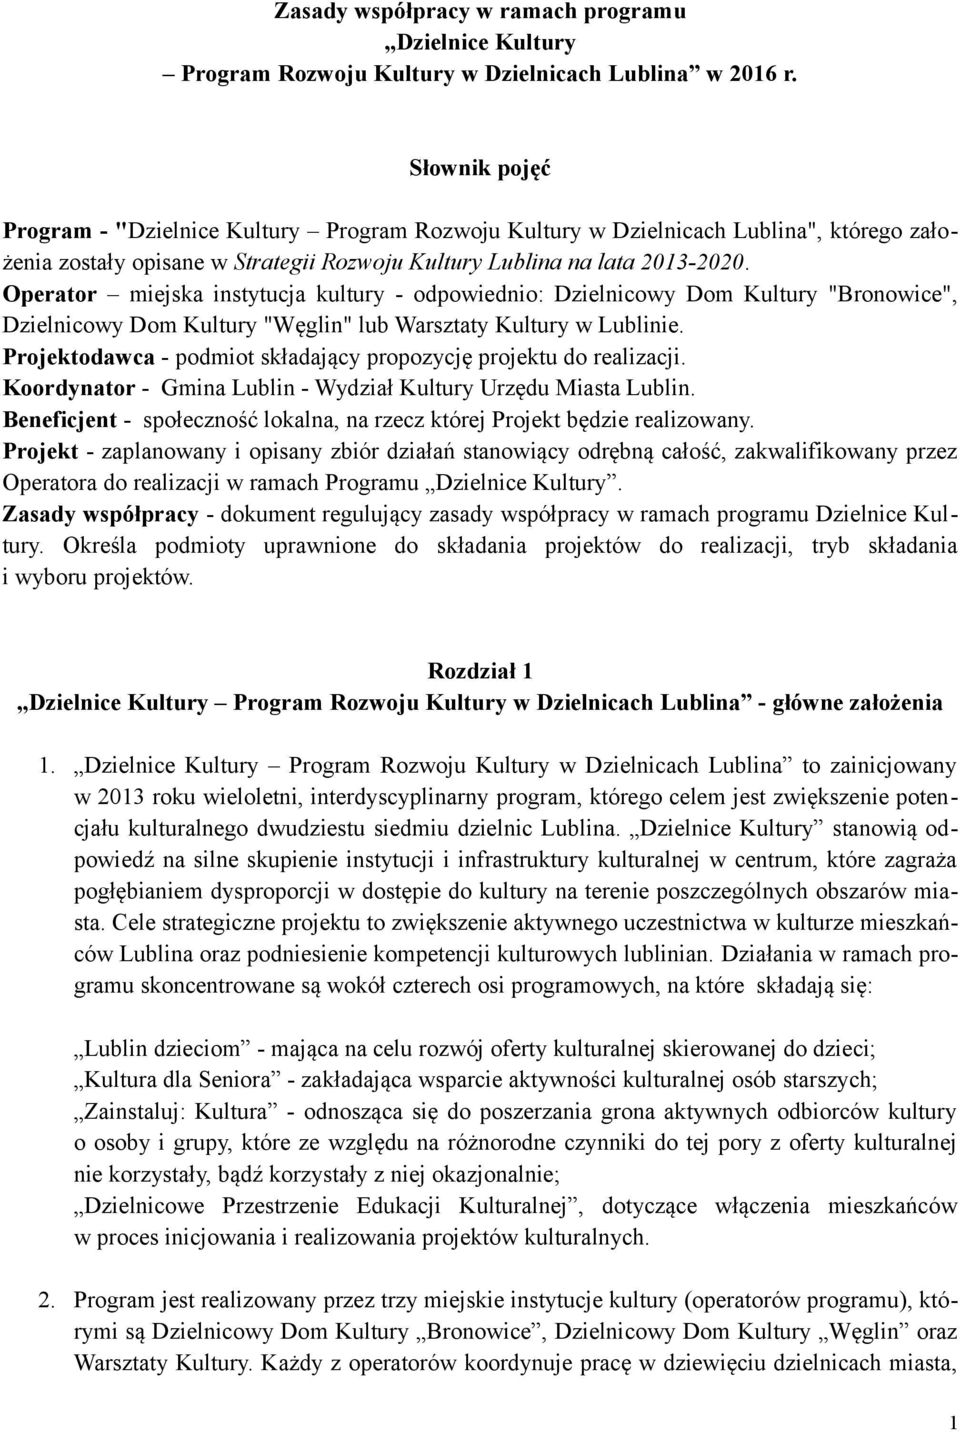 Operator miejska instytucja kultury - odpowiednio: Dzielnicowy Dom Kultury "Bronowice", Dzielnicowy Dom Kultury "Węglin" lub Warsztaty Kultury w Lublinie.